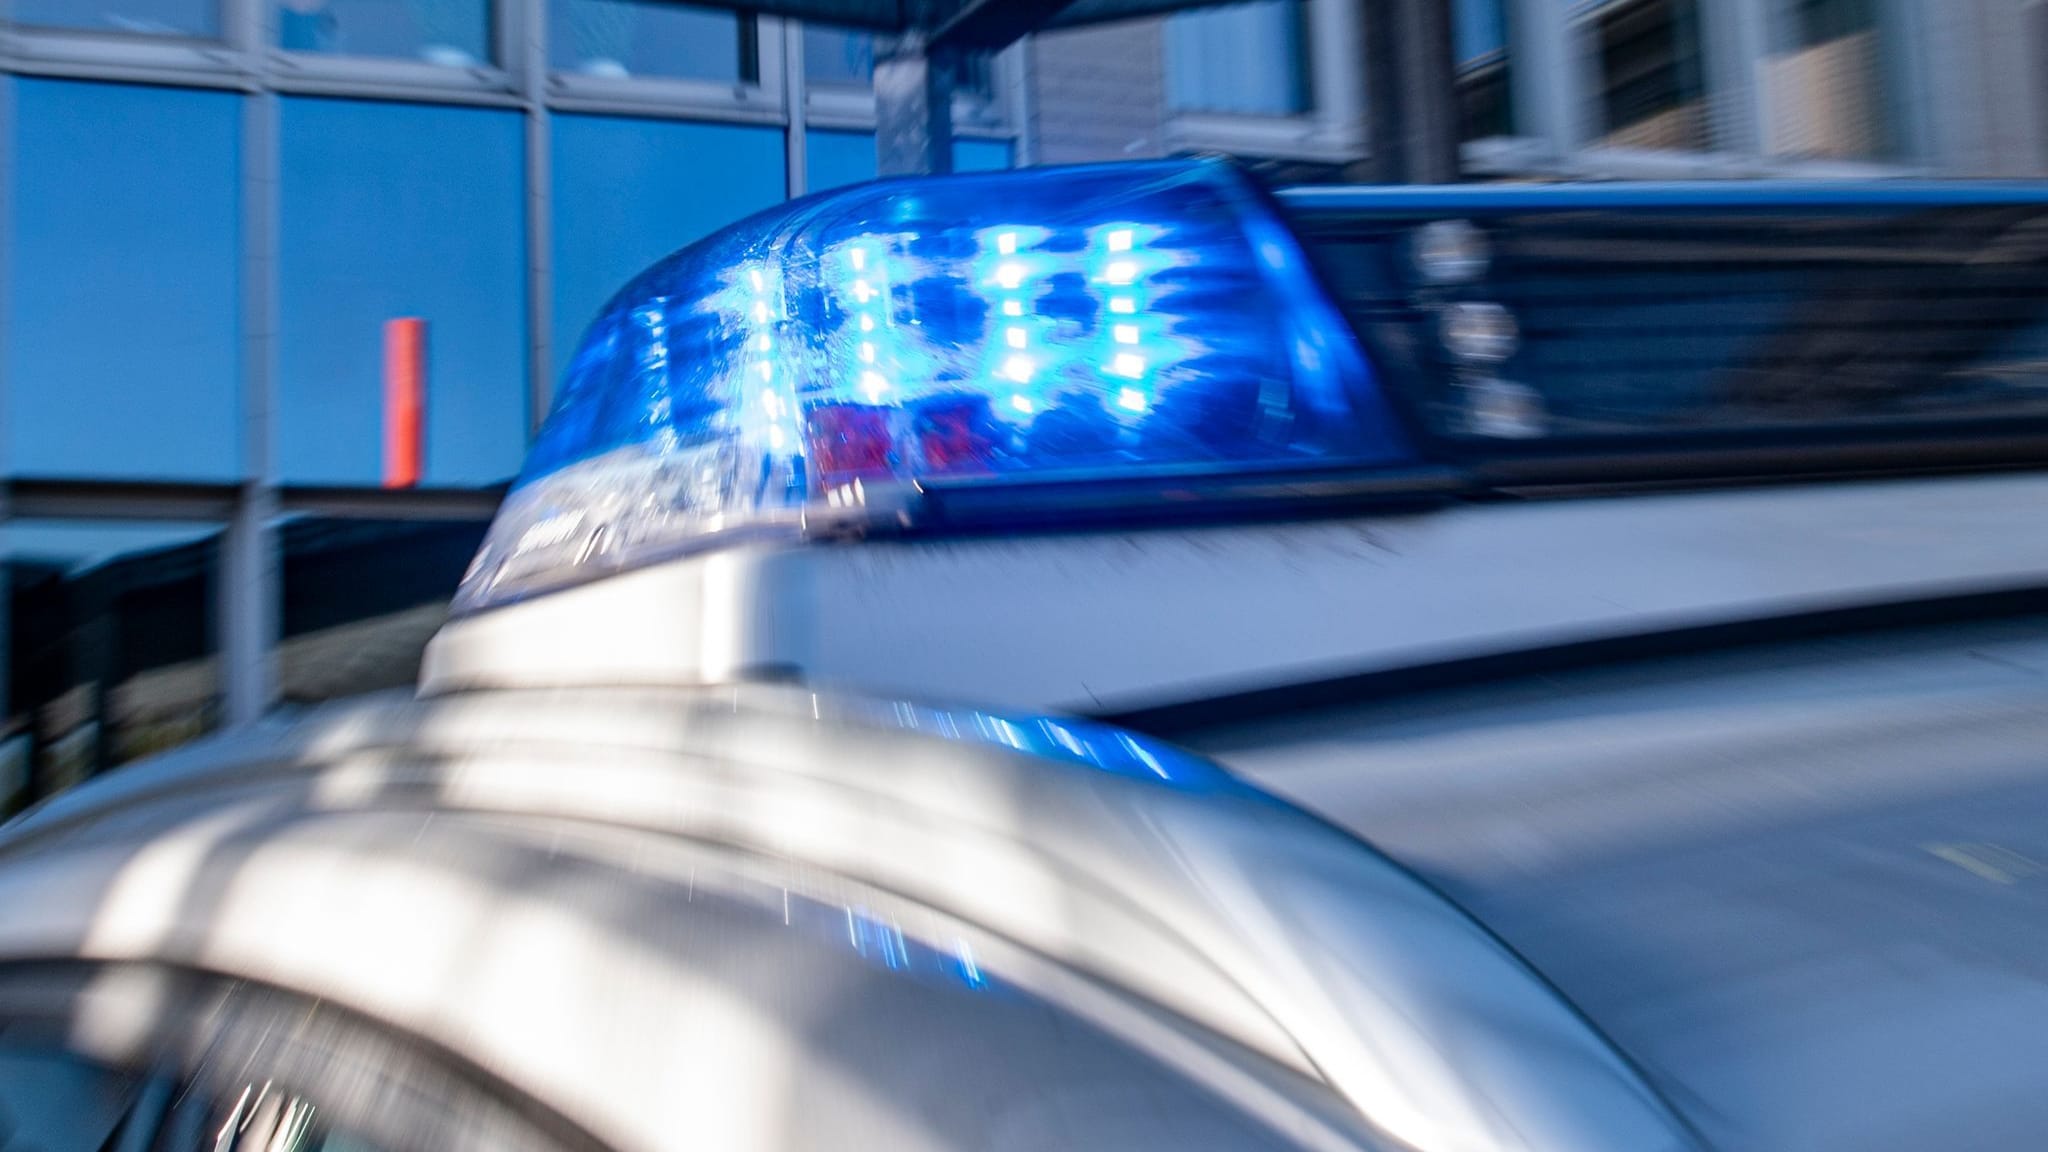 Bluttat bei Ansbach: Täter hat wohl schon früher Nachbarn bedroht